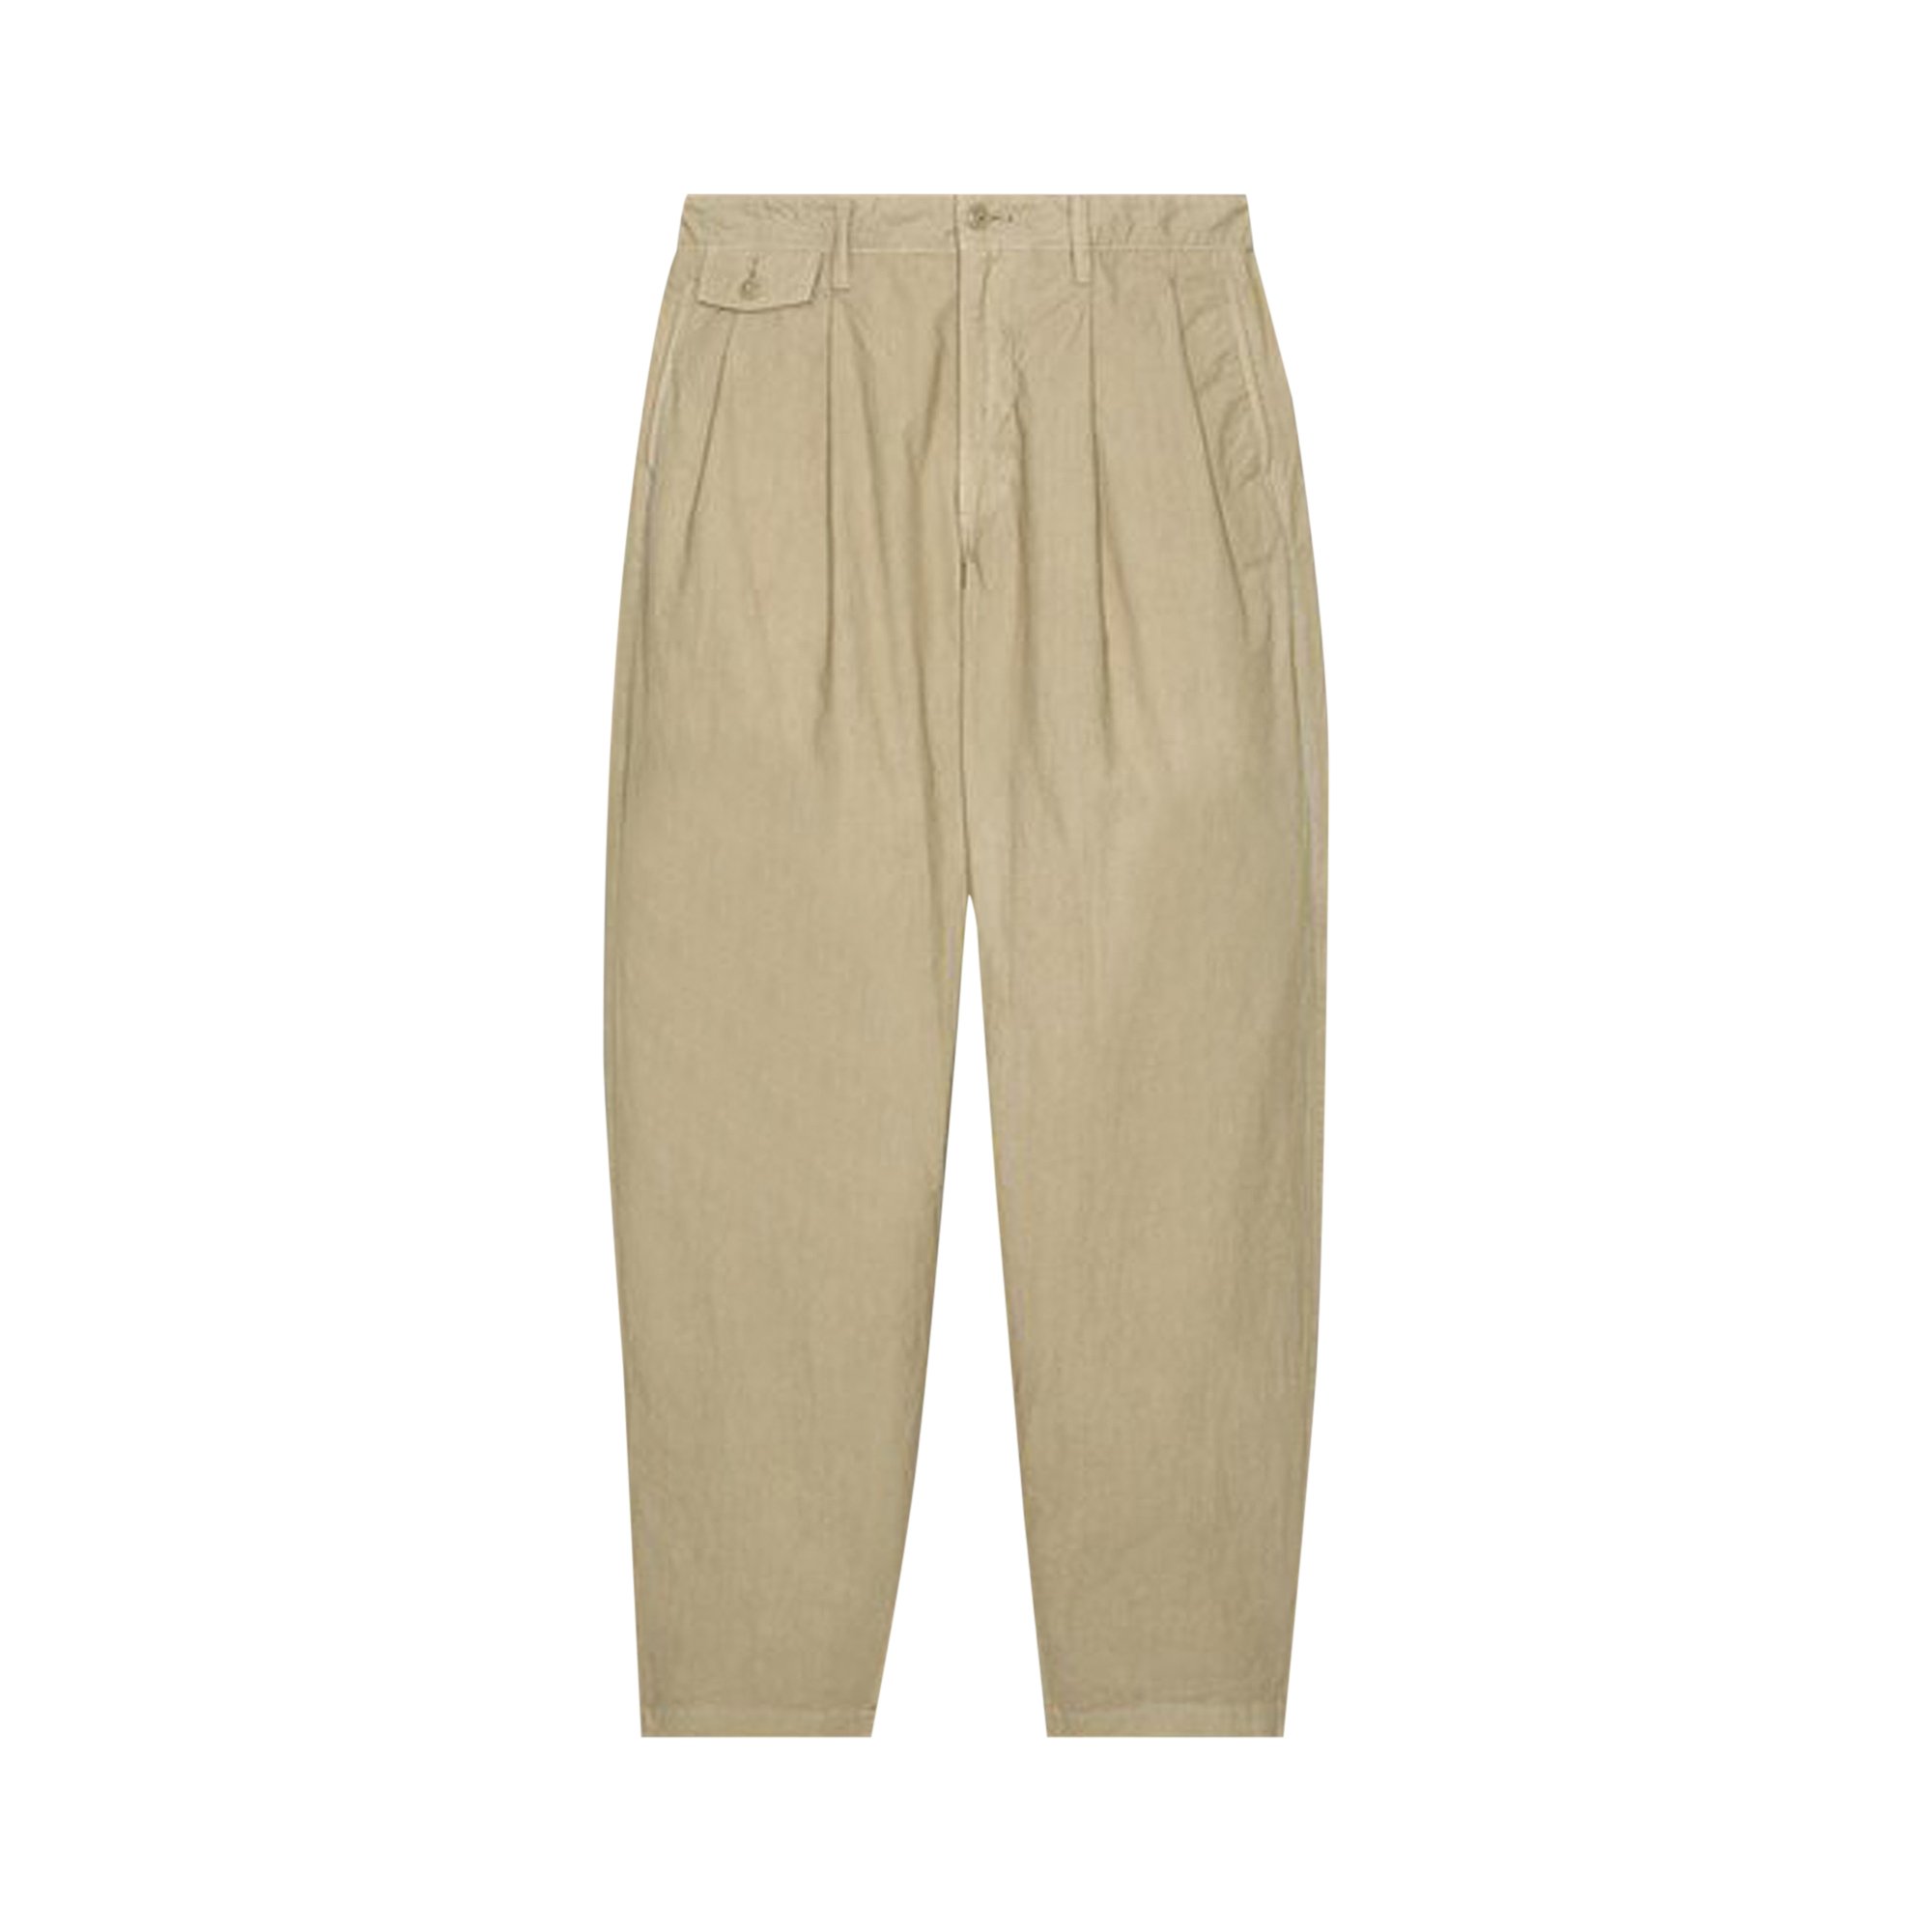 Buy Cav Empt Overdye Two Tuck Pants 'Beige' - CES23PT08 BEIG | GOAT